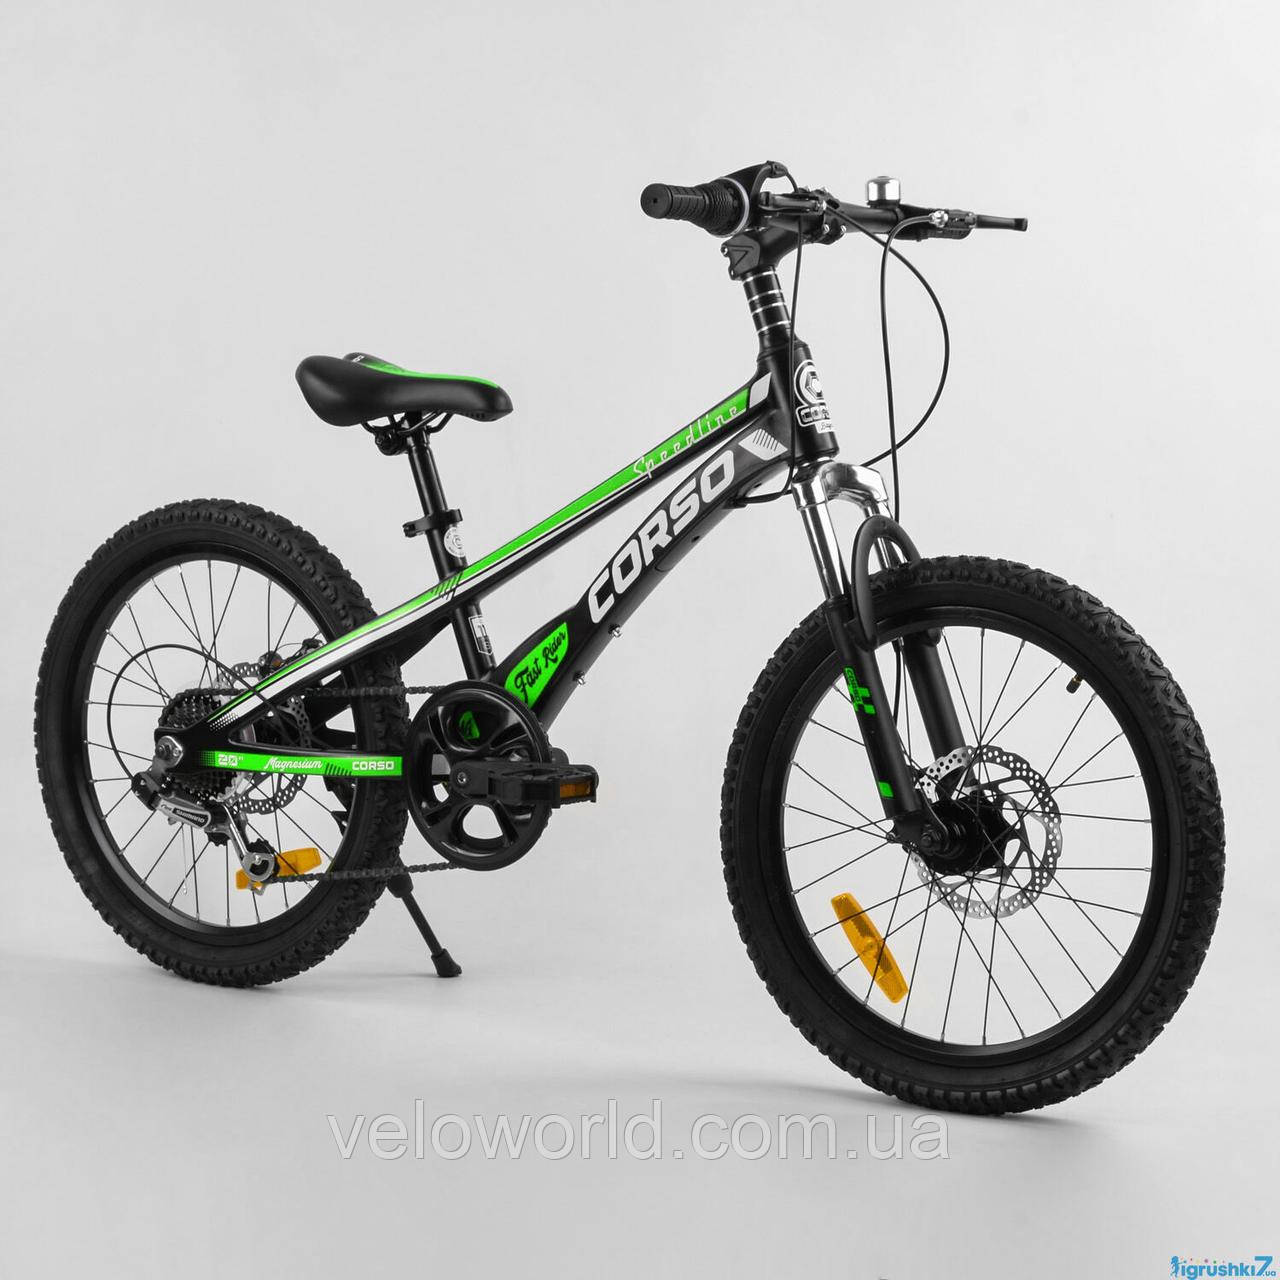 Дитячий спортивний велосипед 20" дюймів Corso «Speedline»  магнієва рама, Shimano Revoshift 7 швидкостей, зібраний на 75%